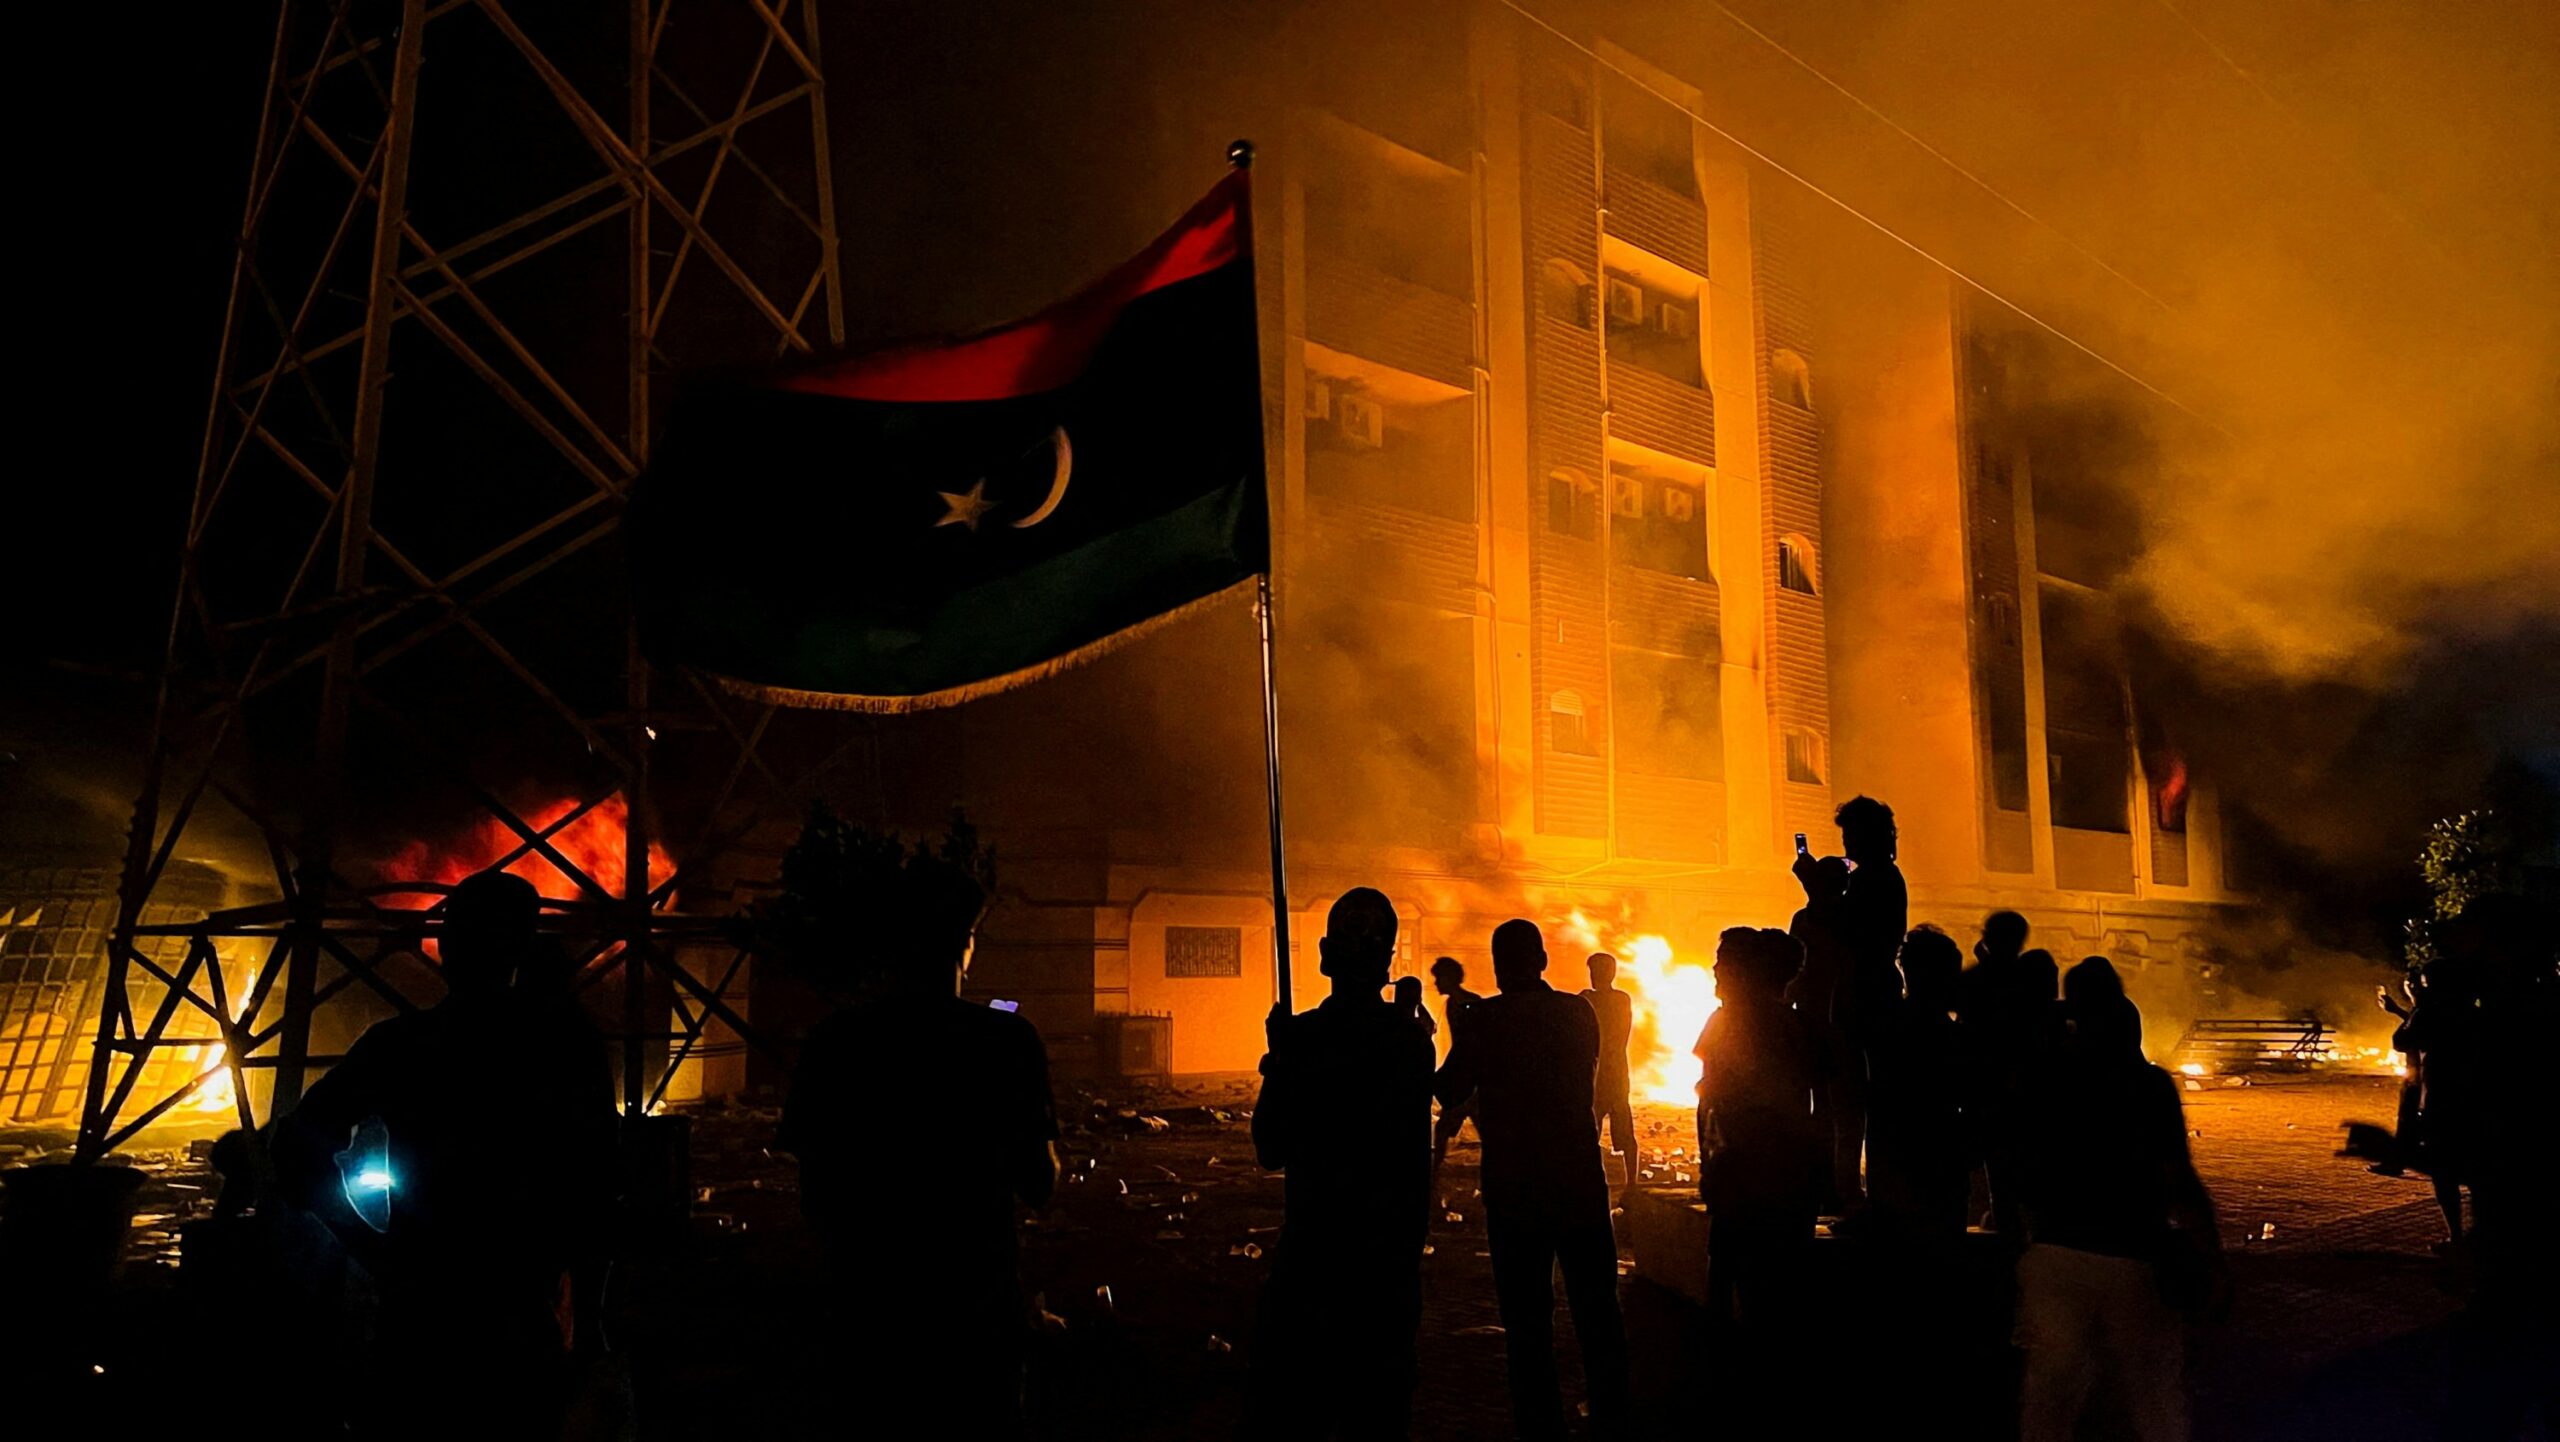 Λιβύη: Διαδηλώνουν οι κάτοικοι μετά τις φονικές πλημμύρες- Ζητούν να λογοδοτήσουν οι αρχές